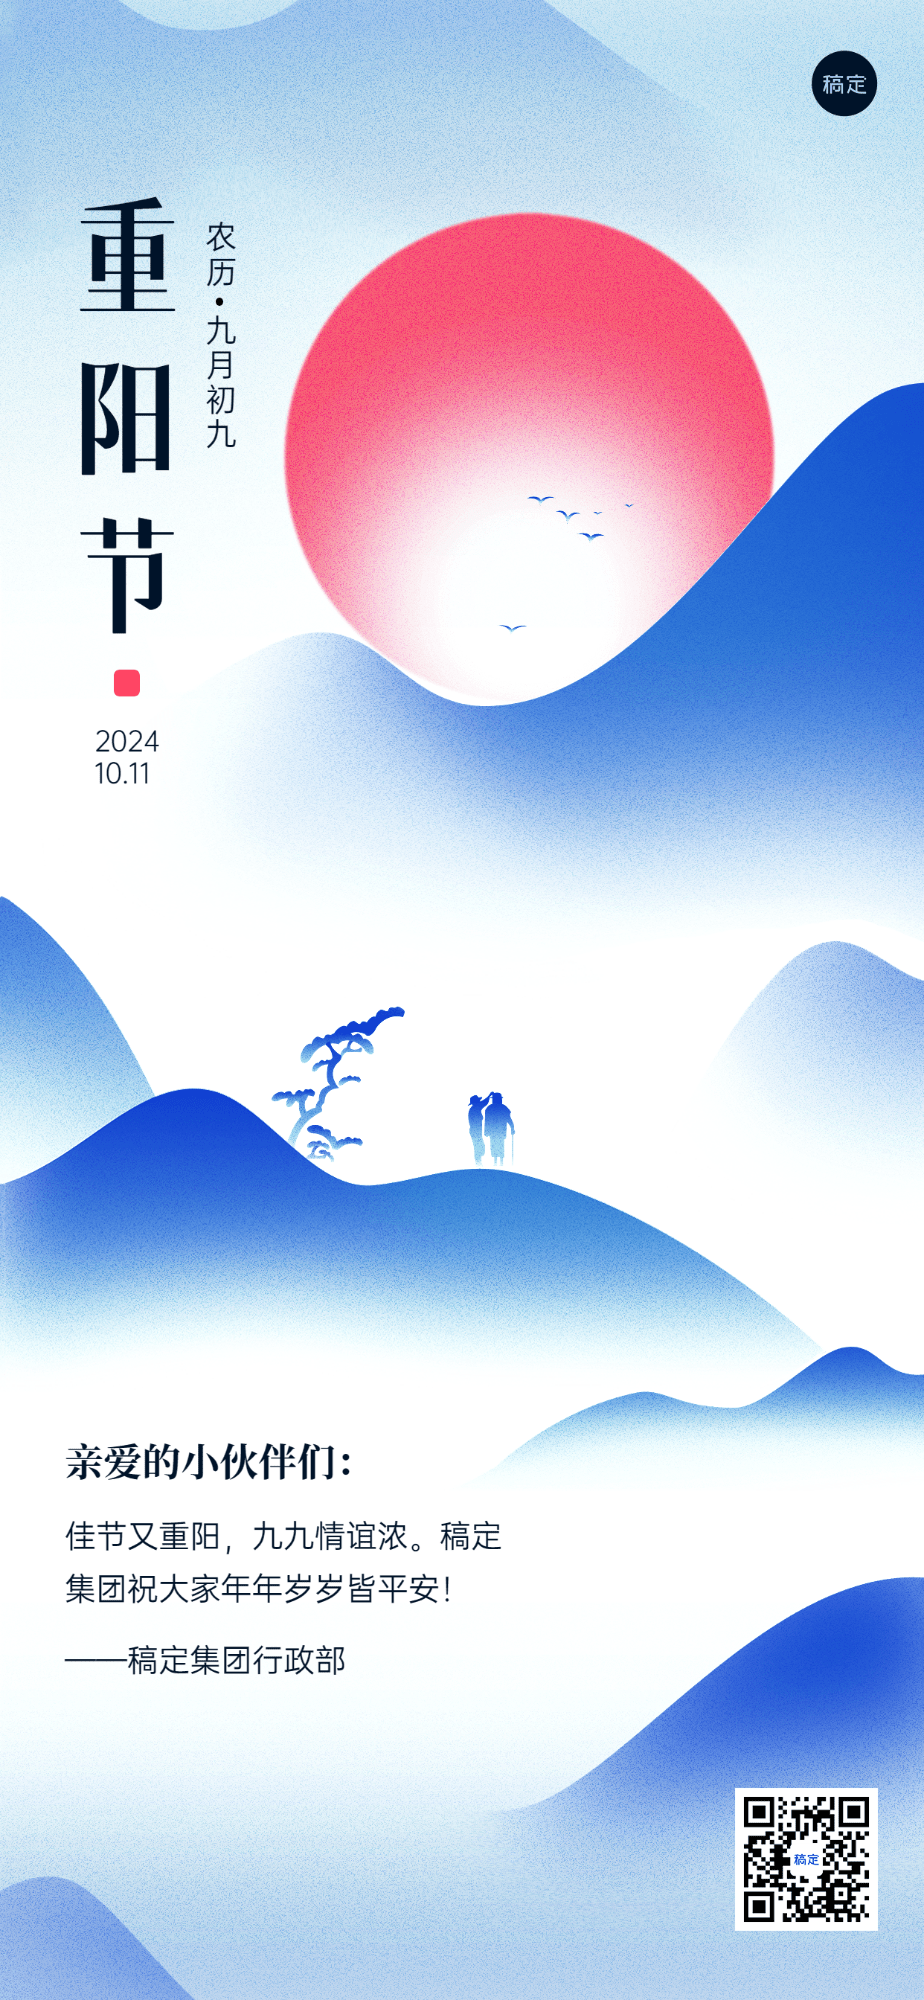 企业重阳节节日祝福贺卡中式渐变插画风全屏竖版海报预览效果